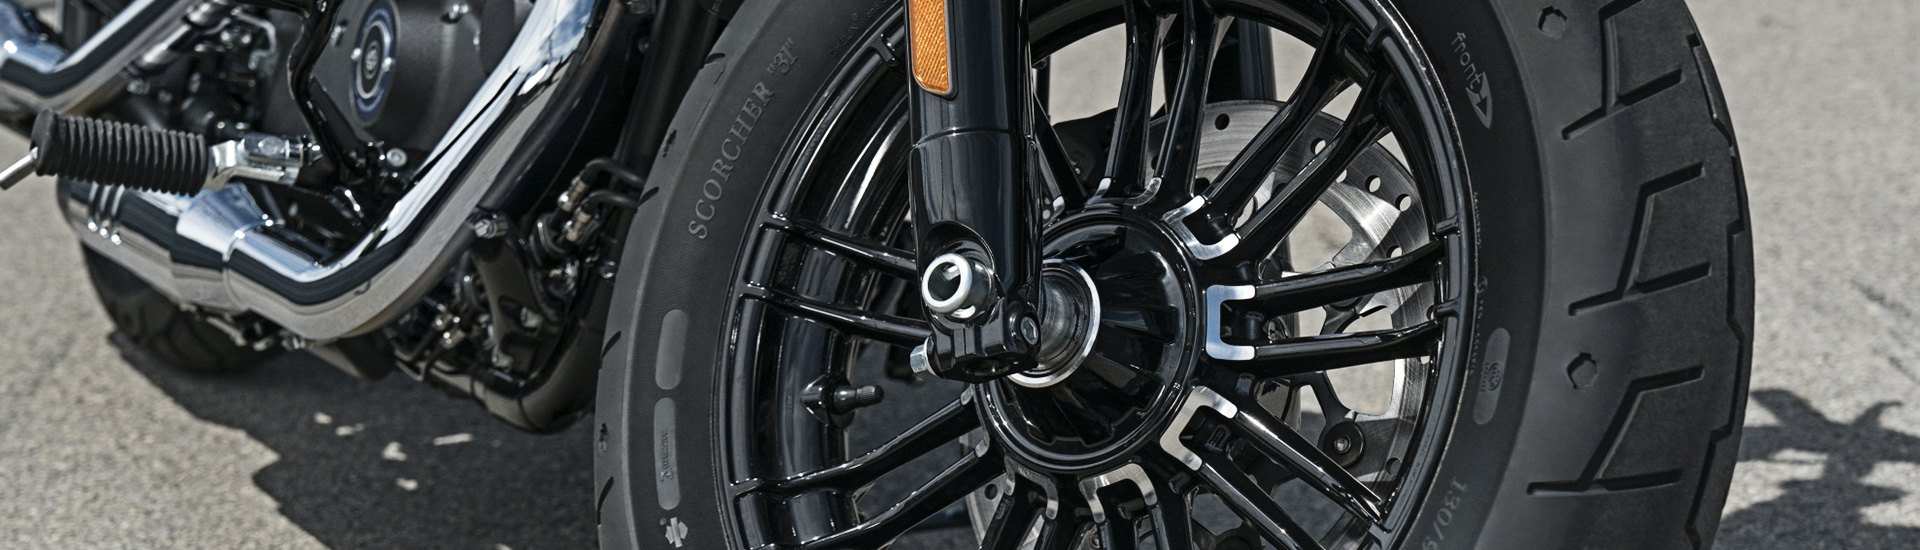 Motorcycle Wheels & Tires